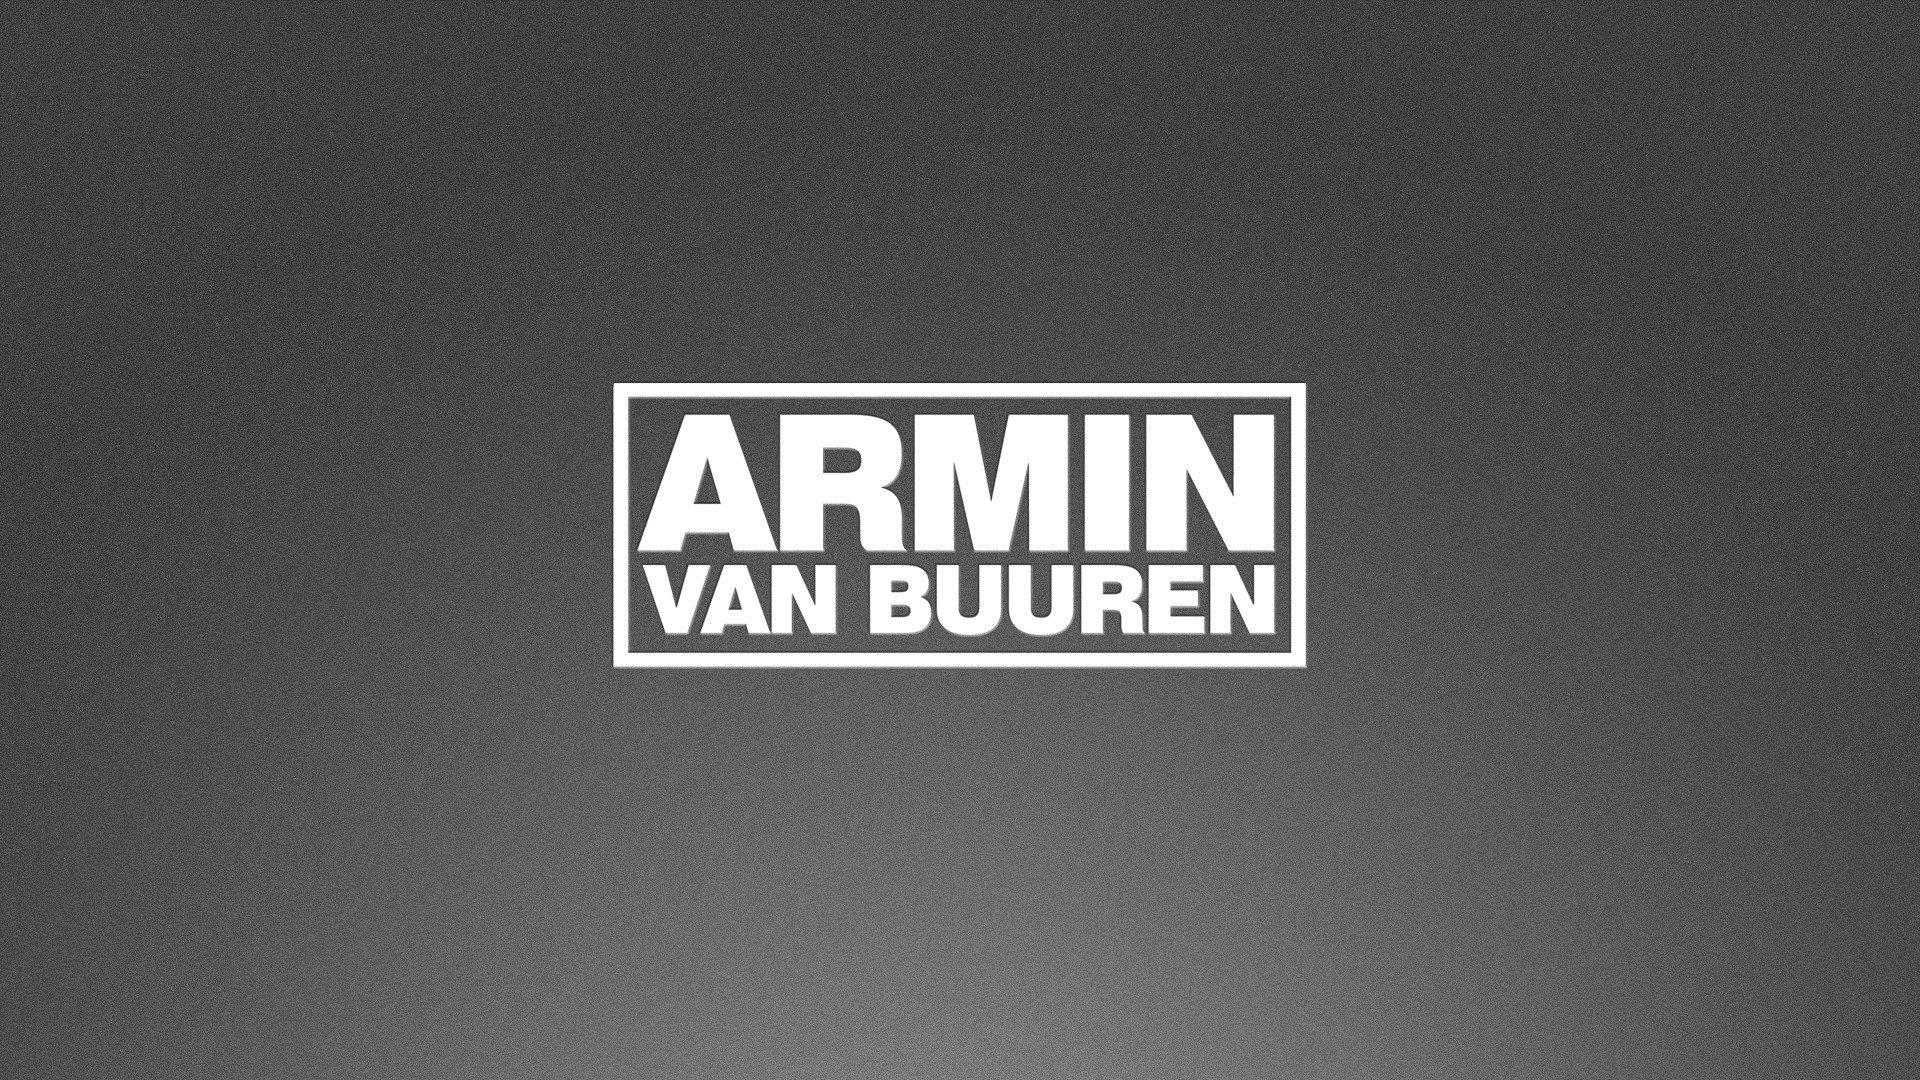 Armin Van Buuren Logo HD Wallpaper, Background Image